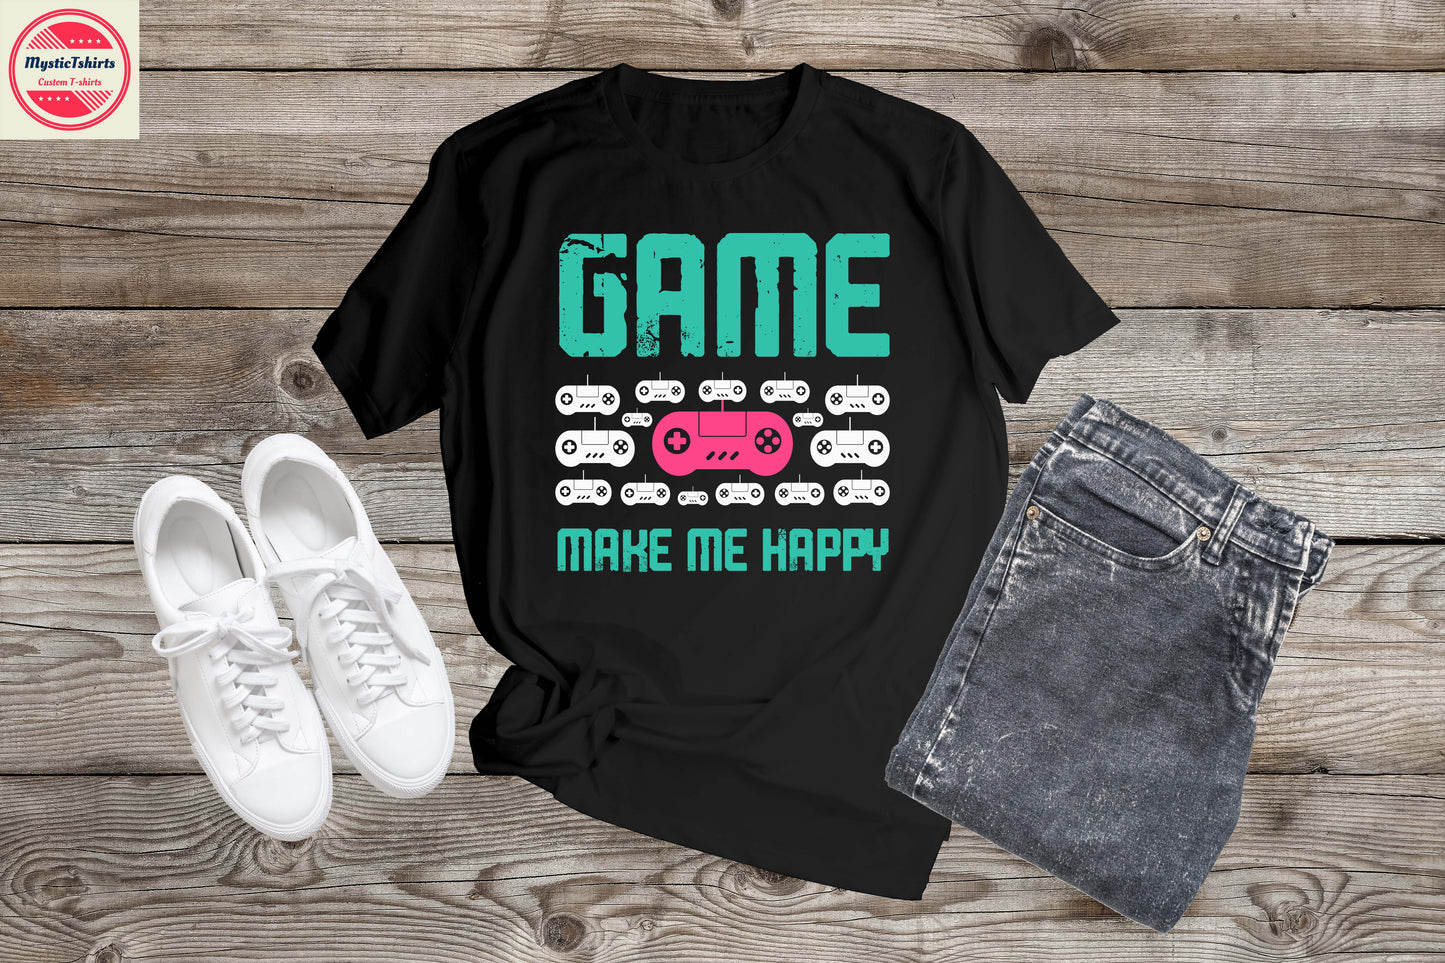 165. GAME MAKE ME HAPPY, Custom Made Shirt, Personalized T-Shirt, Custom Text, Make Your Own Shirt, Custom Tee